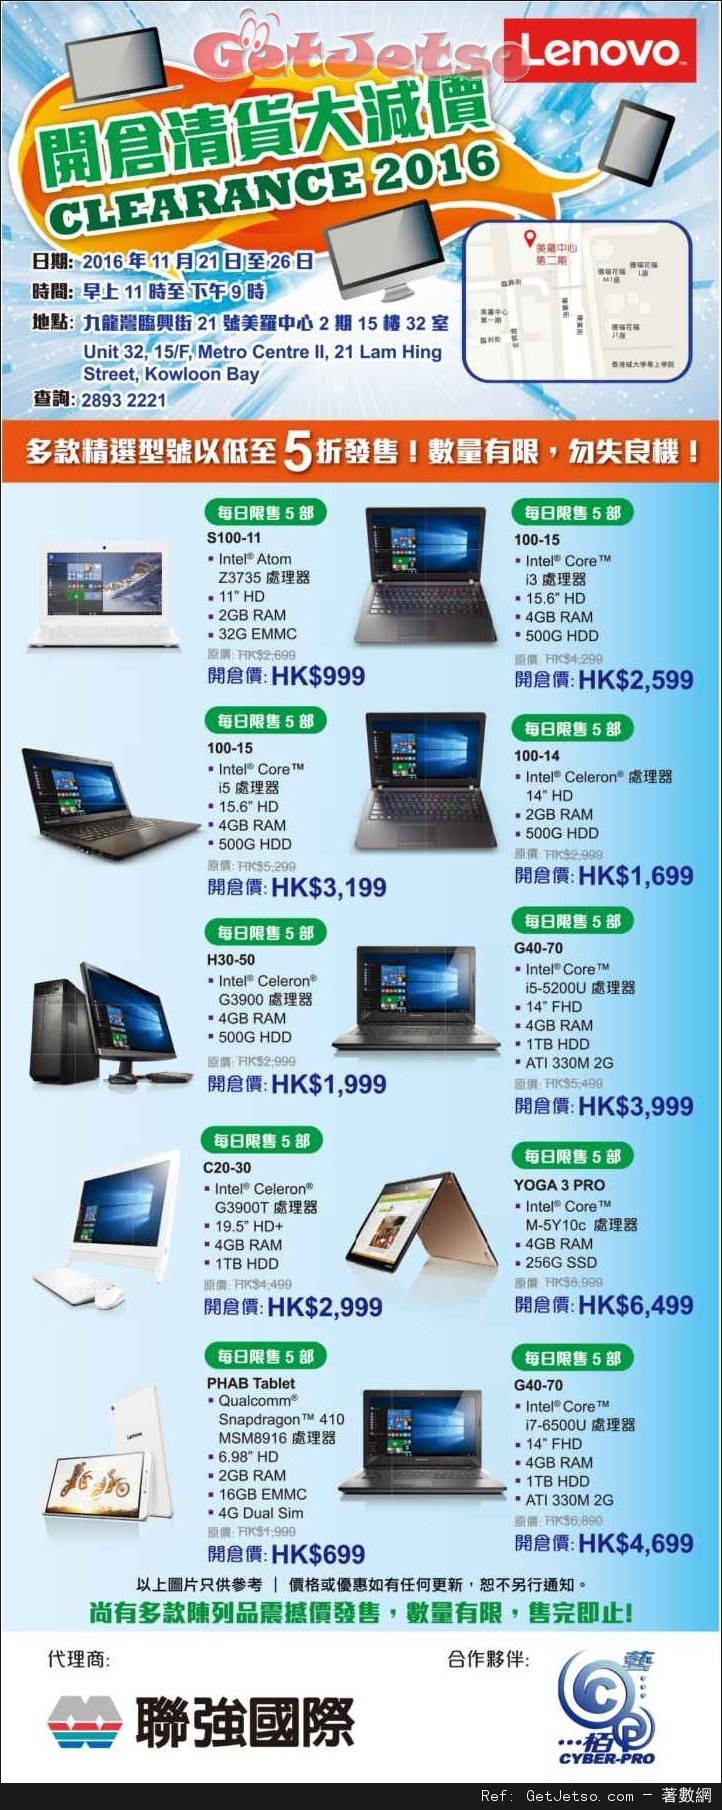 Lenovo 開倉清貨大減價低至5折優惠(至16年11月26日)圖片1